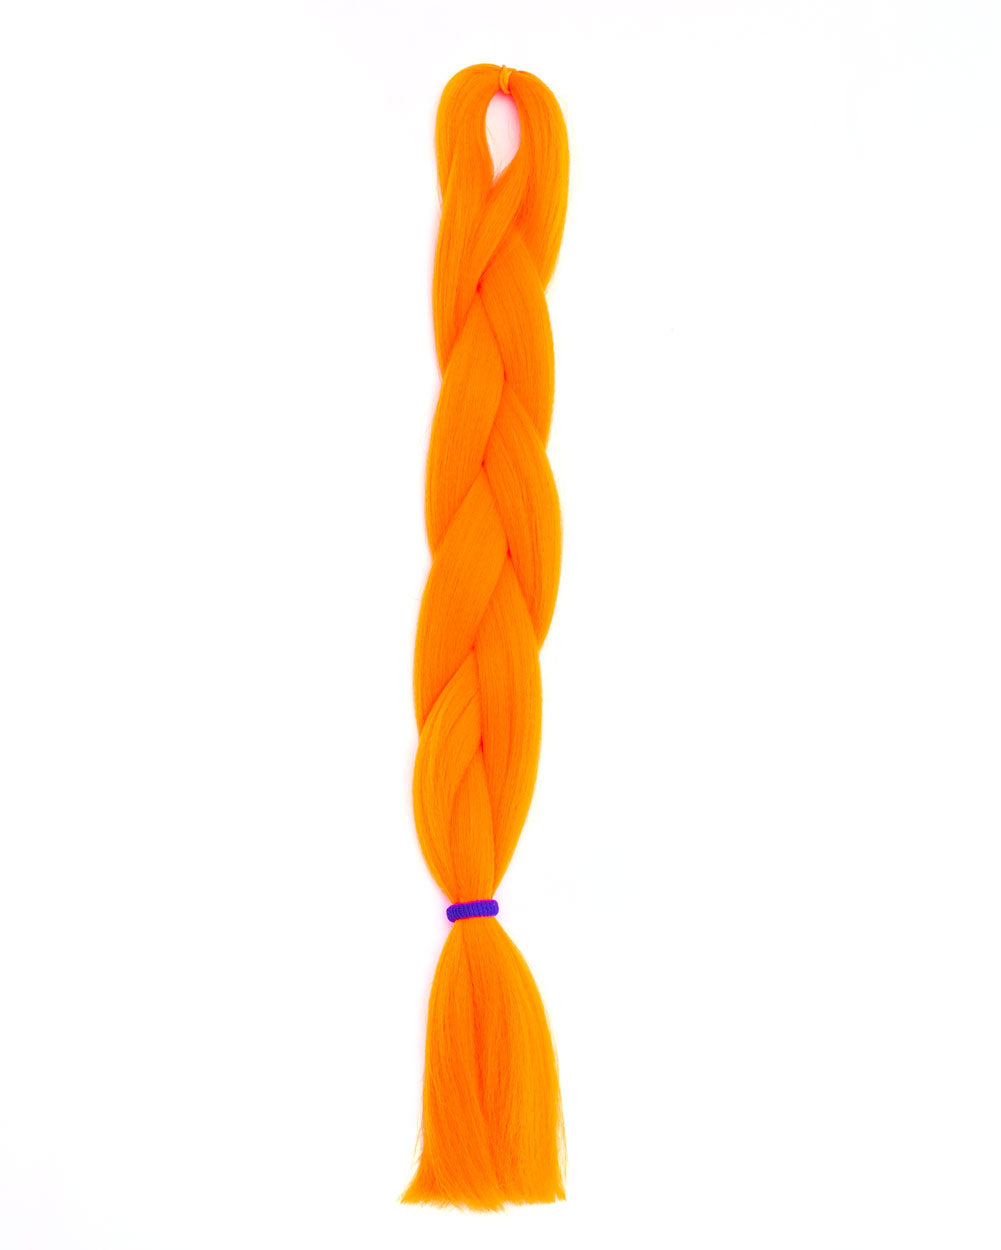 Bang - Bright Orange Hair Extension - Lunautics Braid-In Hair